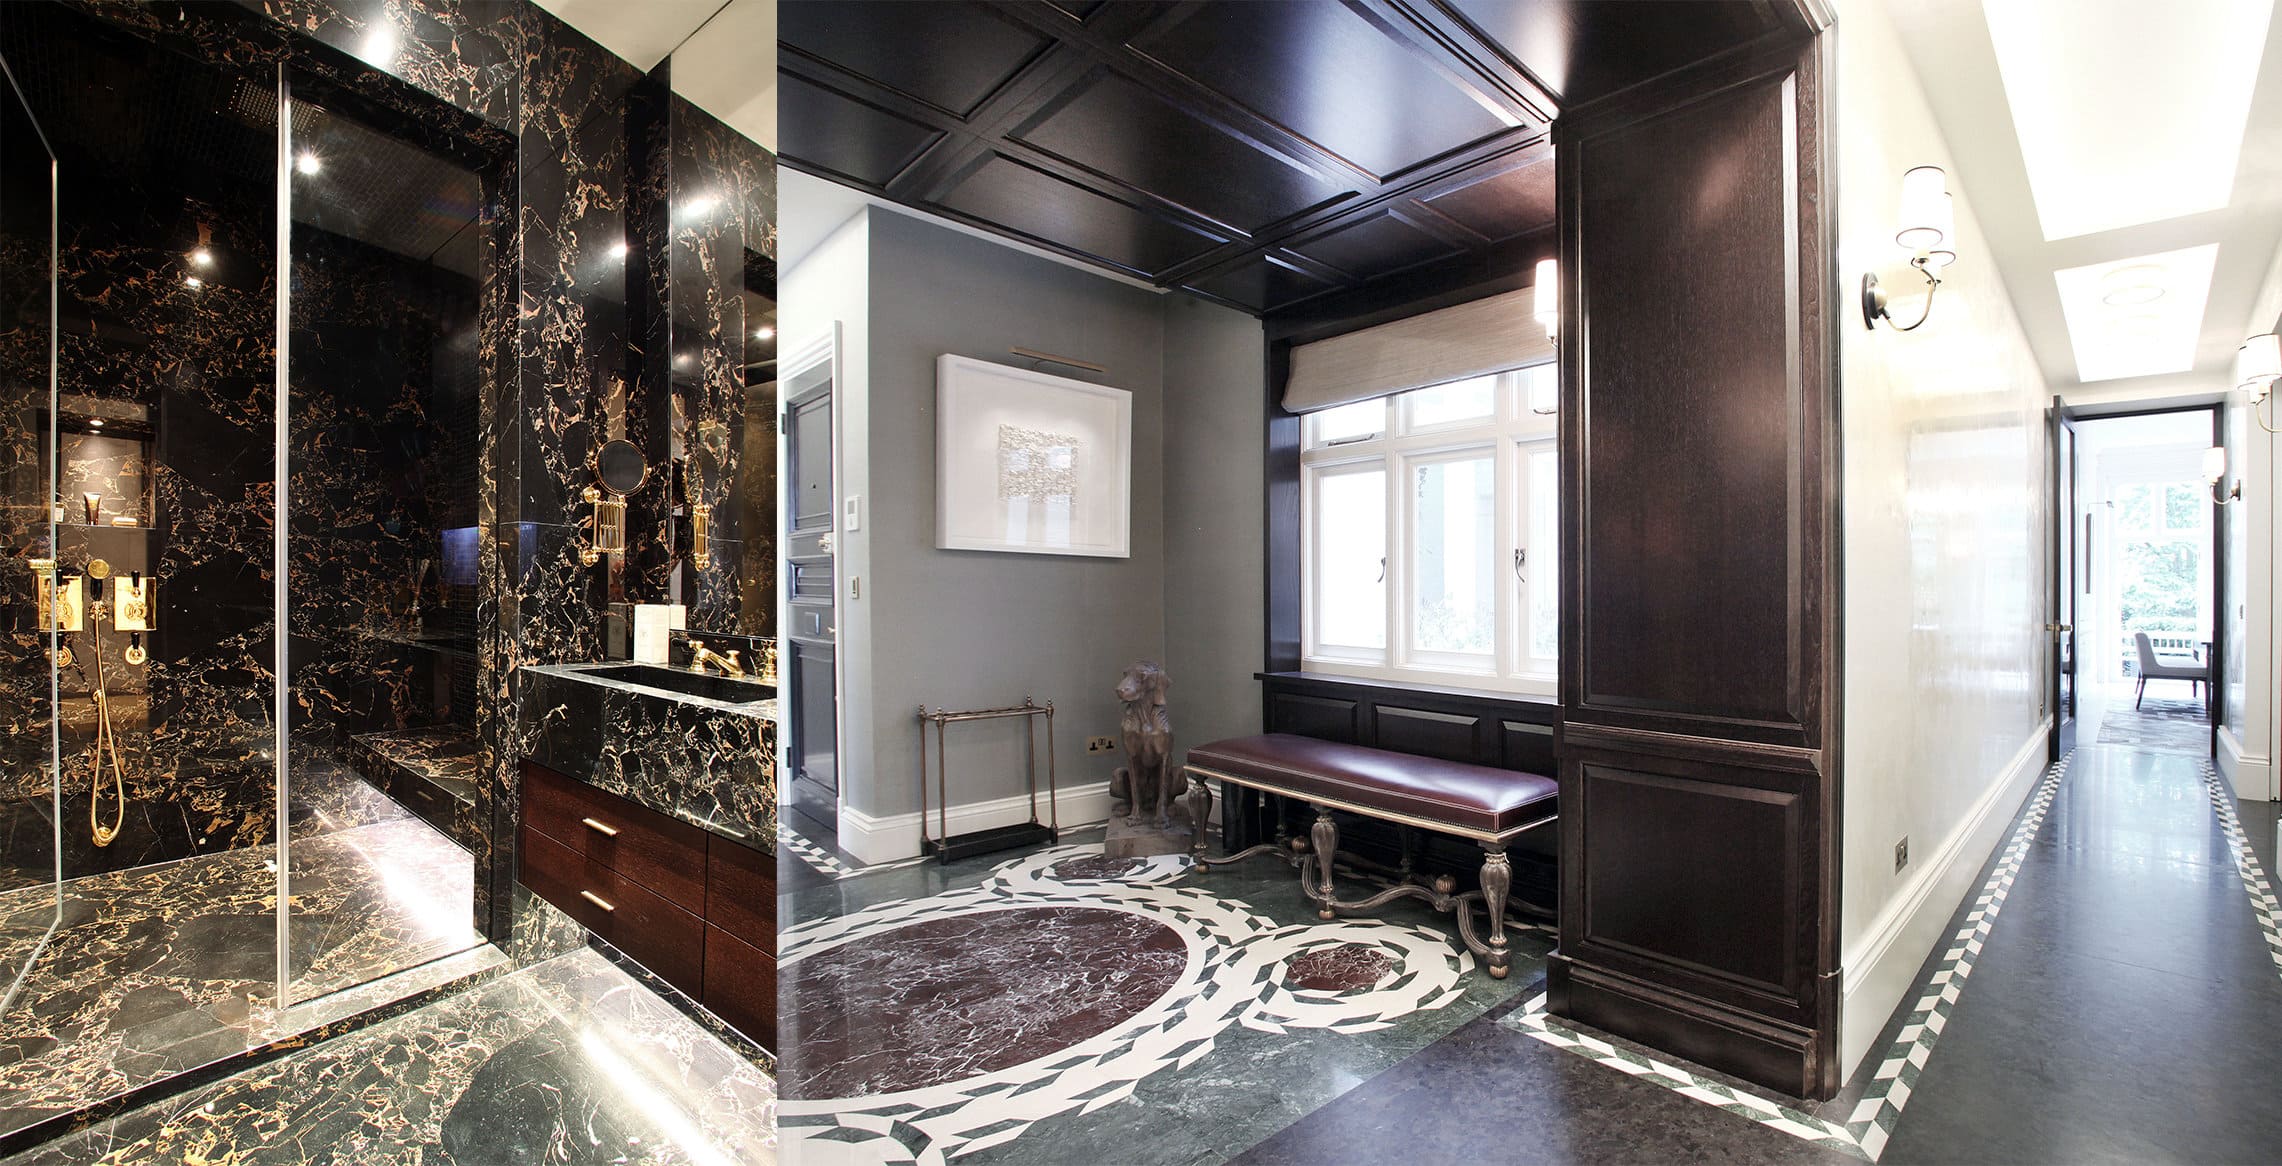 misch_MISCH studio's luxury interior design decoration ideas